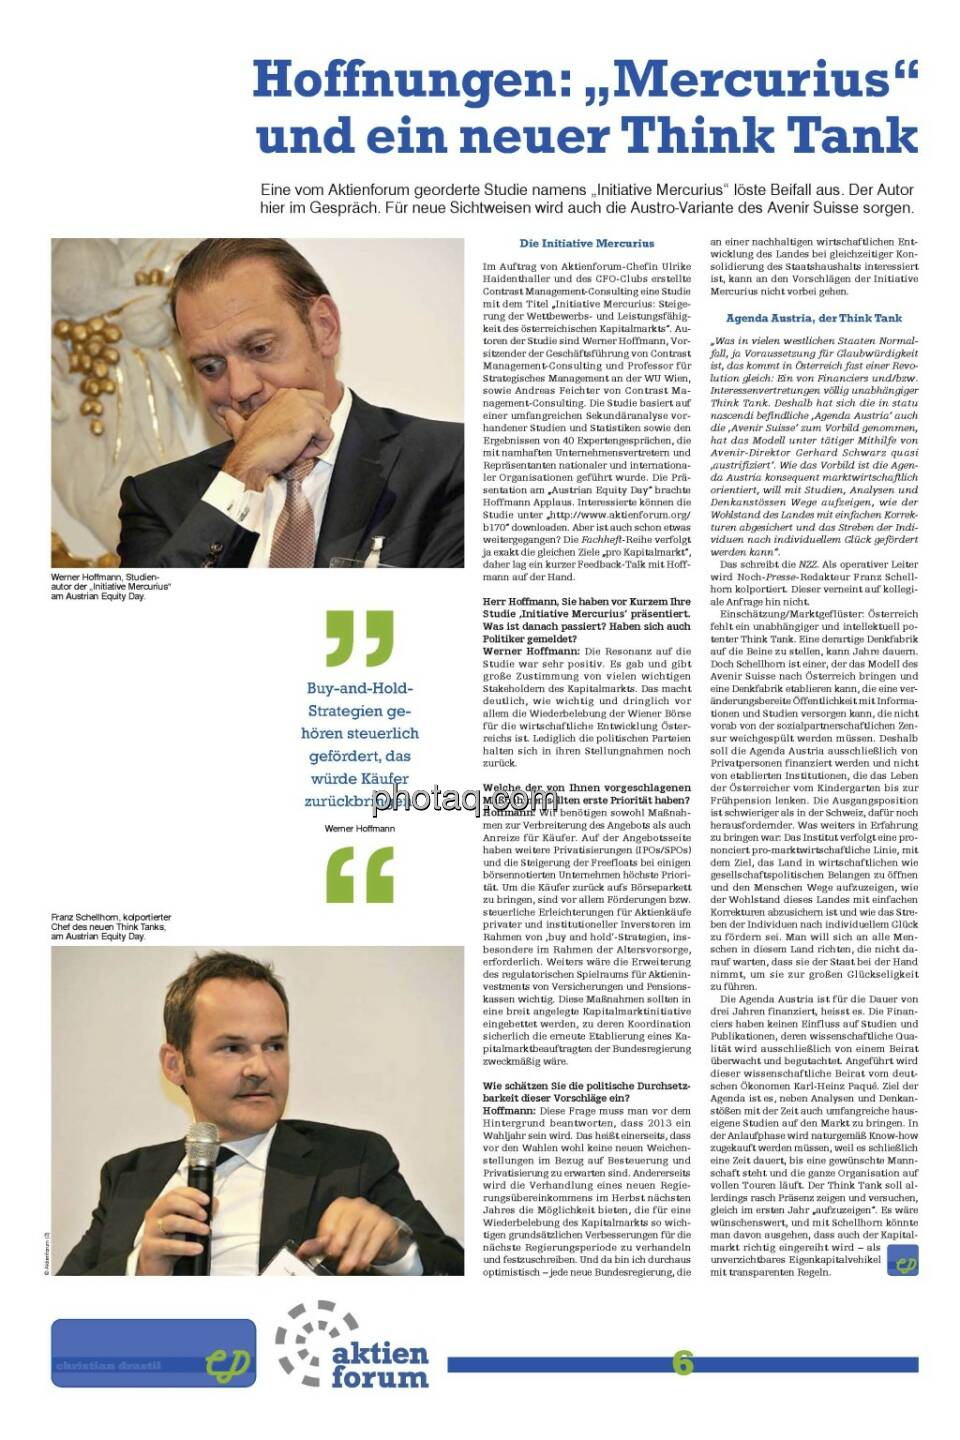 Seite 6 Fachheft 3: Werner Hoffmann (Initiative Mercurius), Franz Schellhorn (Kandidat für die Agenda Austria)